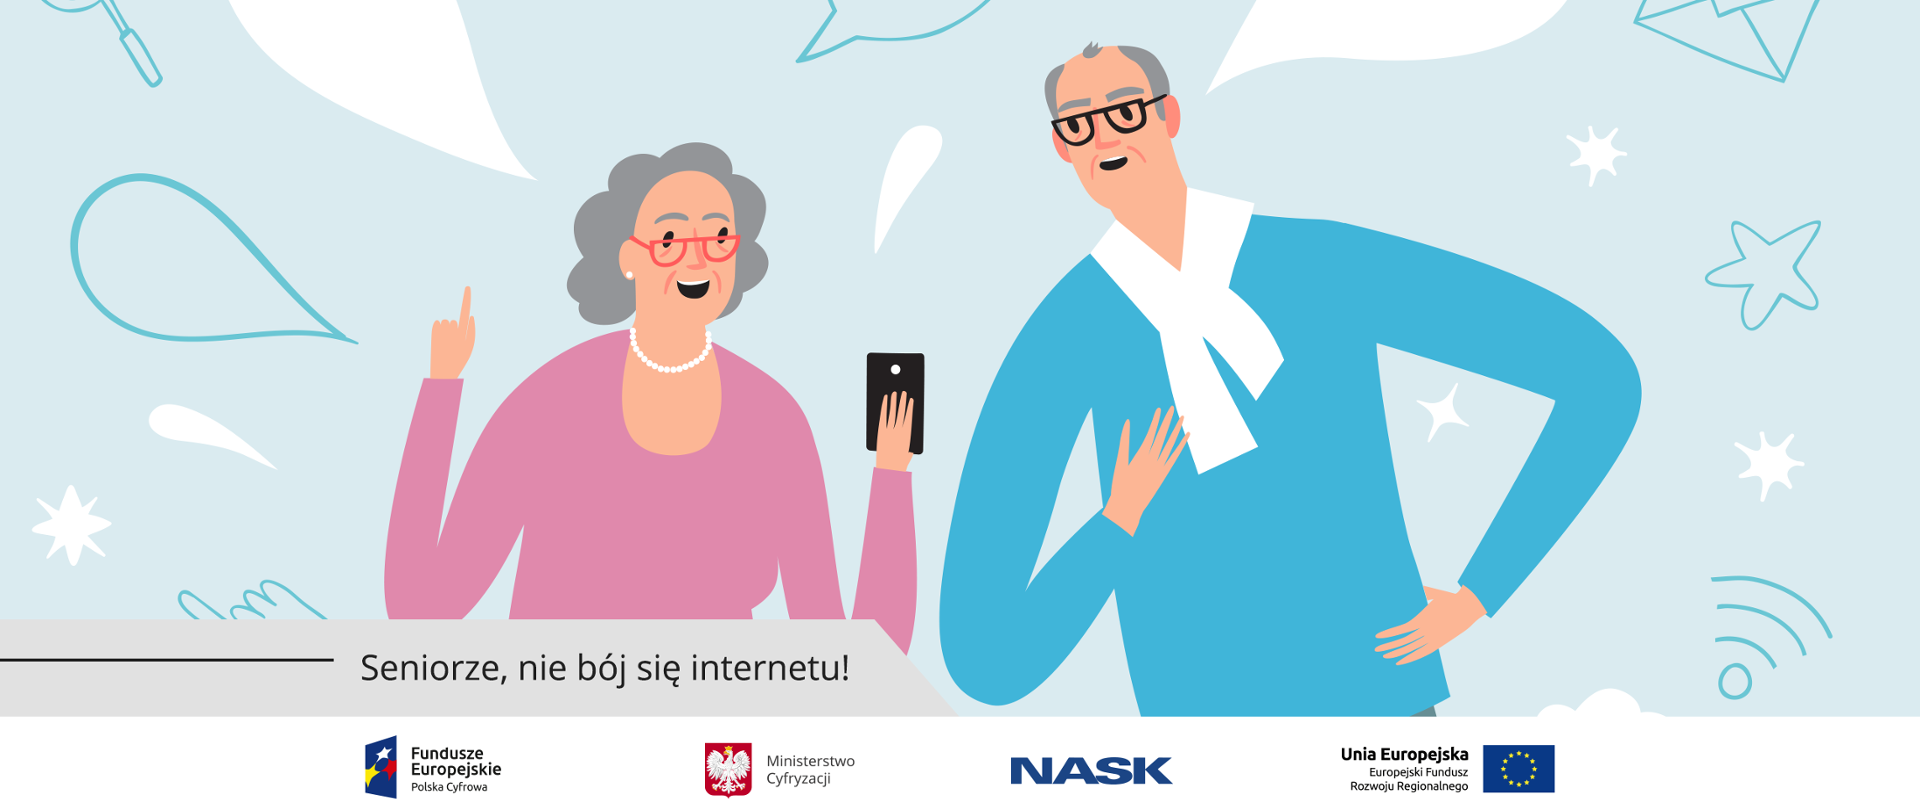 Grafika. Babcia i dziadek wpatrzeni w ekran smartfona. Poniżej napis: Seniorze, nie bój się internetu!